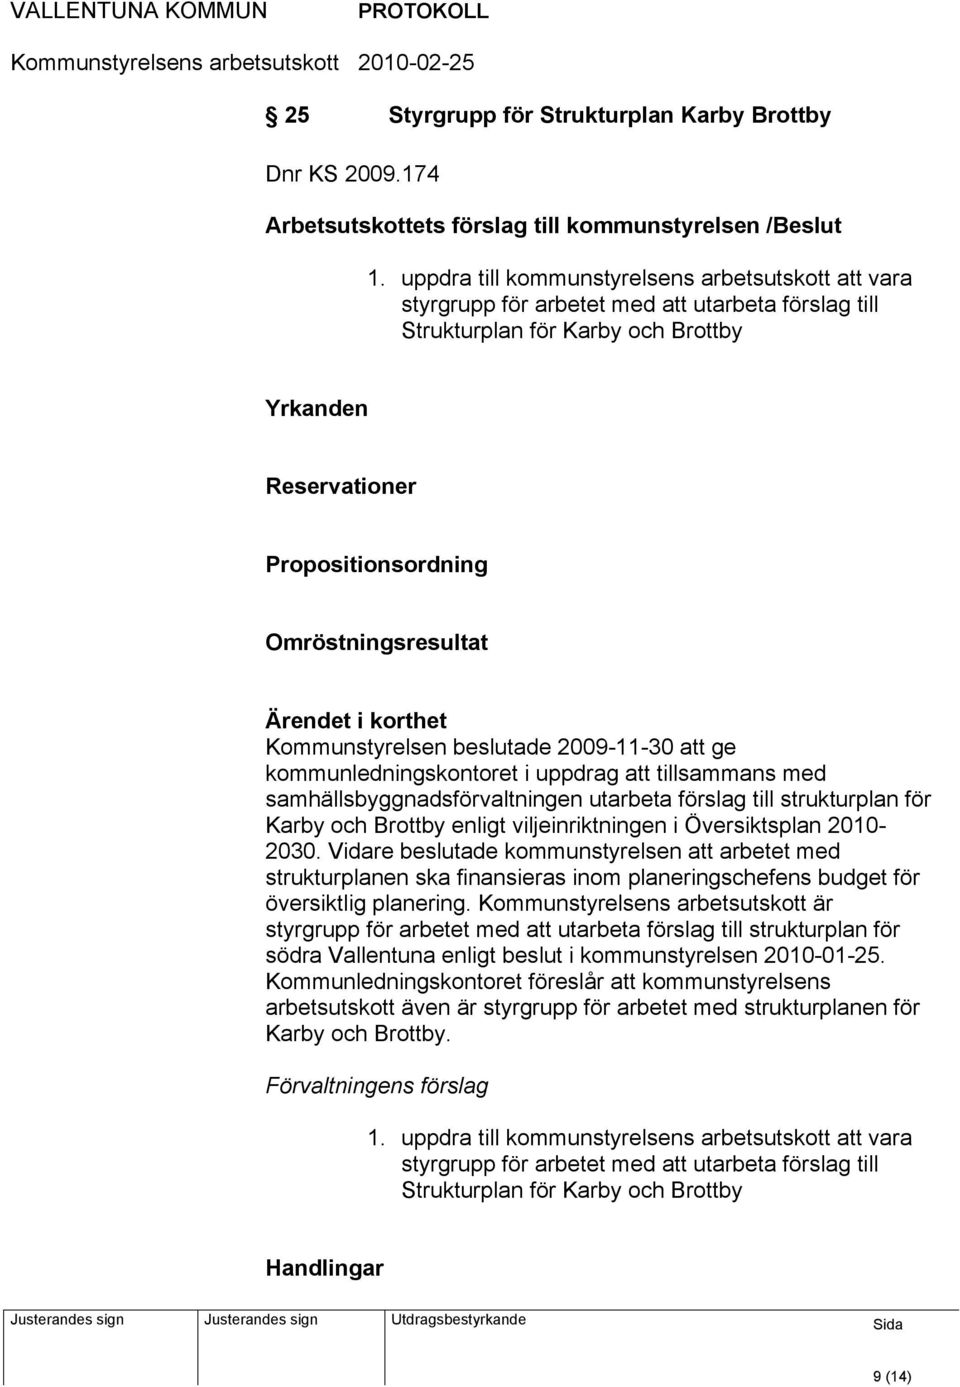 Omröstningsresultat Kommunstyrelsen beslutade 2009-11-30 att ge kommunledningskontoret i uppdrag att tillsammans med samhällsbyggnadsförvaltningen utarbeta förslag till strukturplan för Karby och